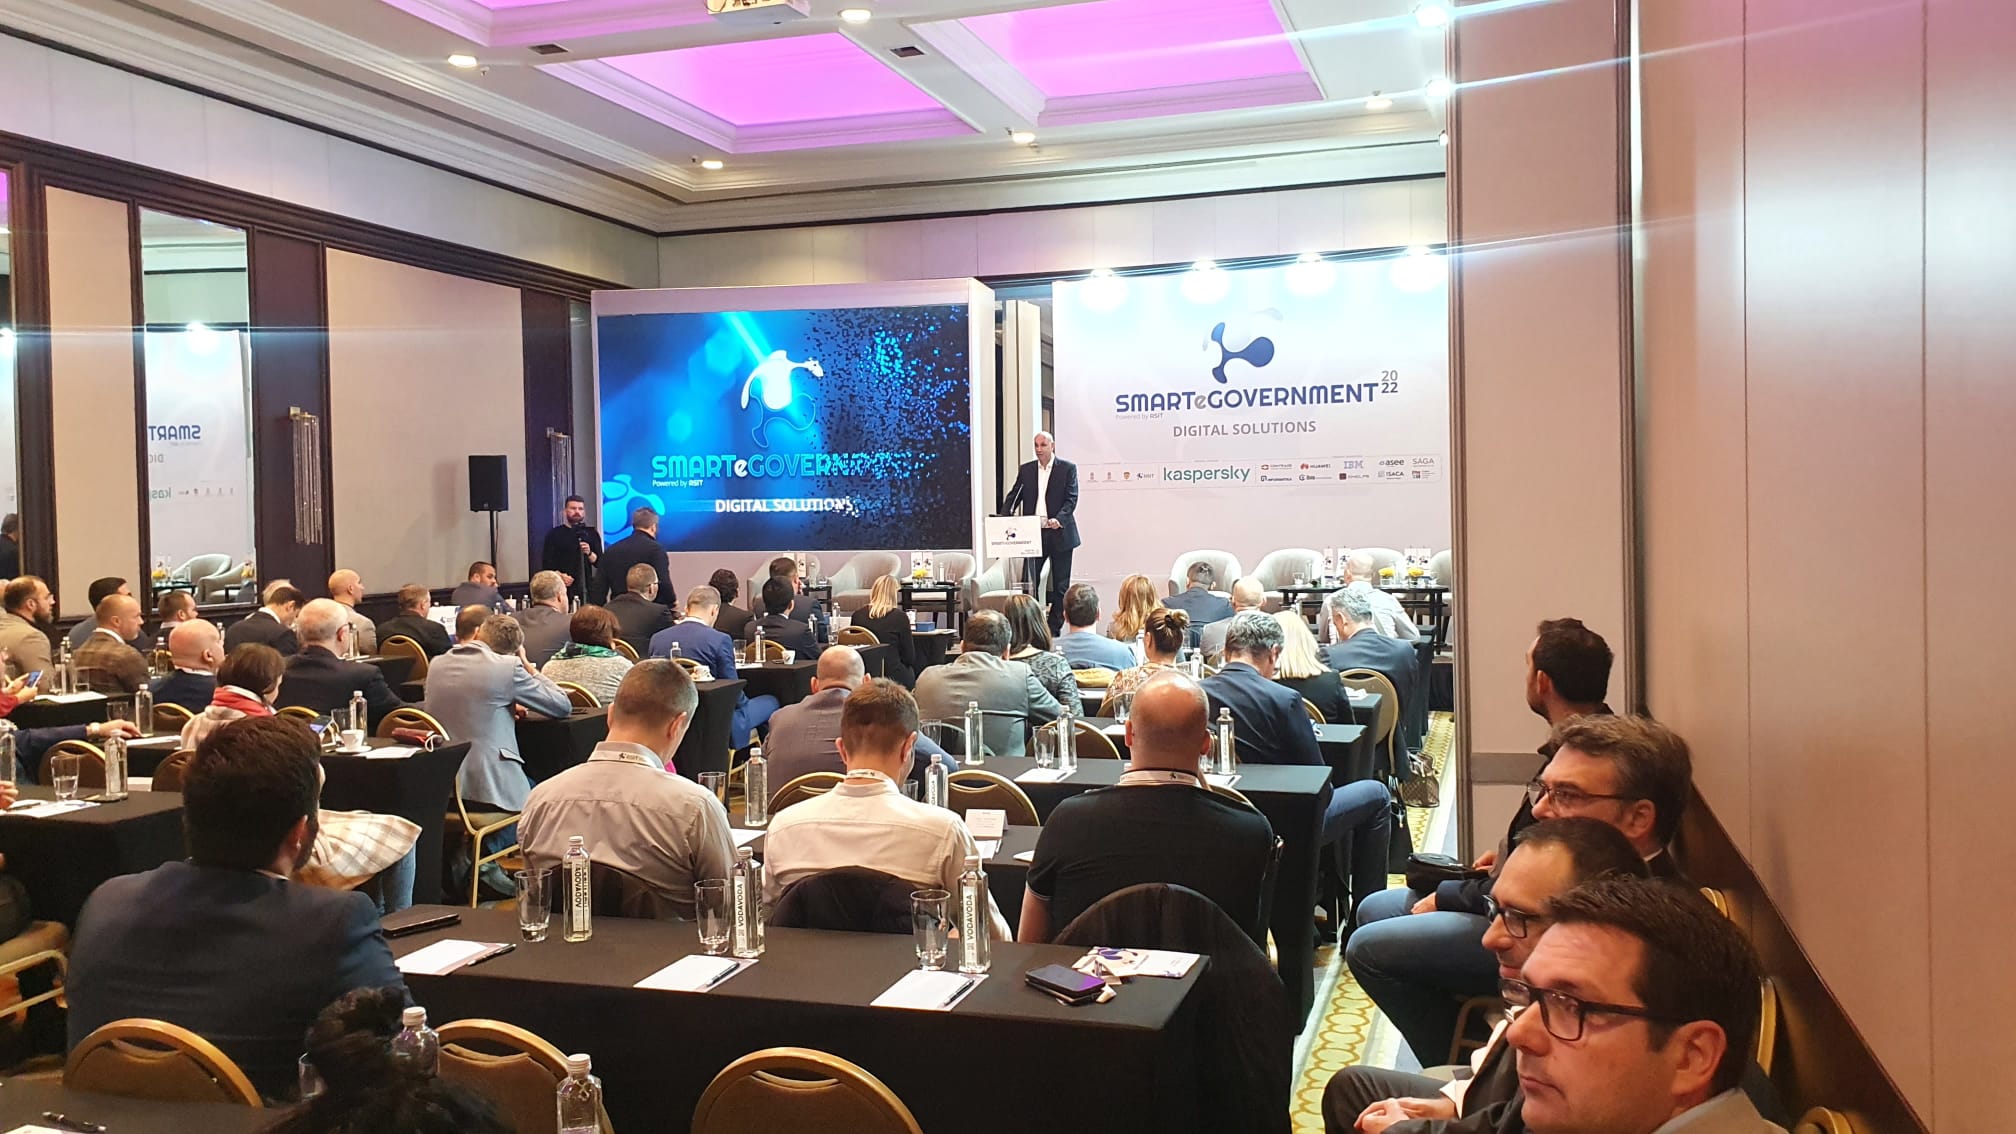 Милорад Стојановић, помоћник директора Канцеларије за ИТ и еУправу, отворио конференцију Smart eGovernment 2022.